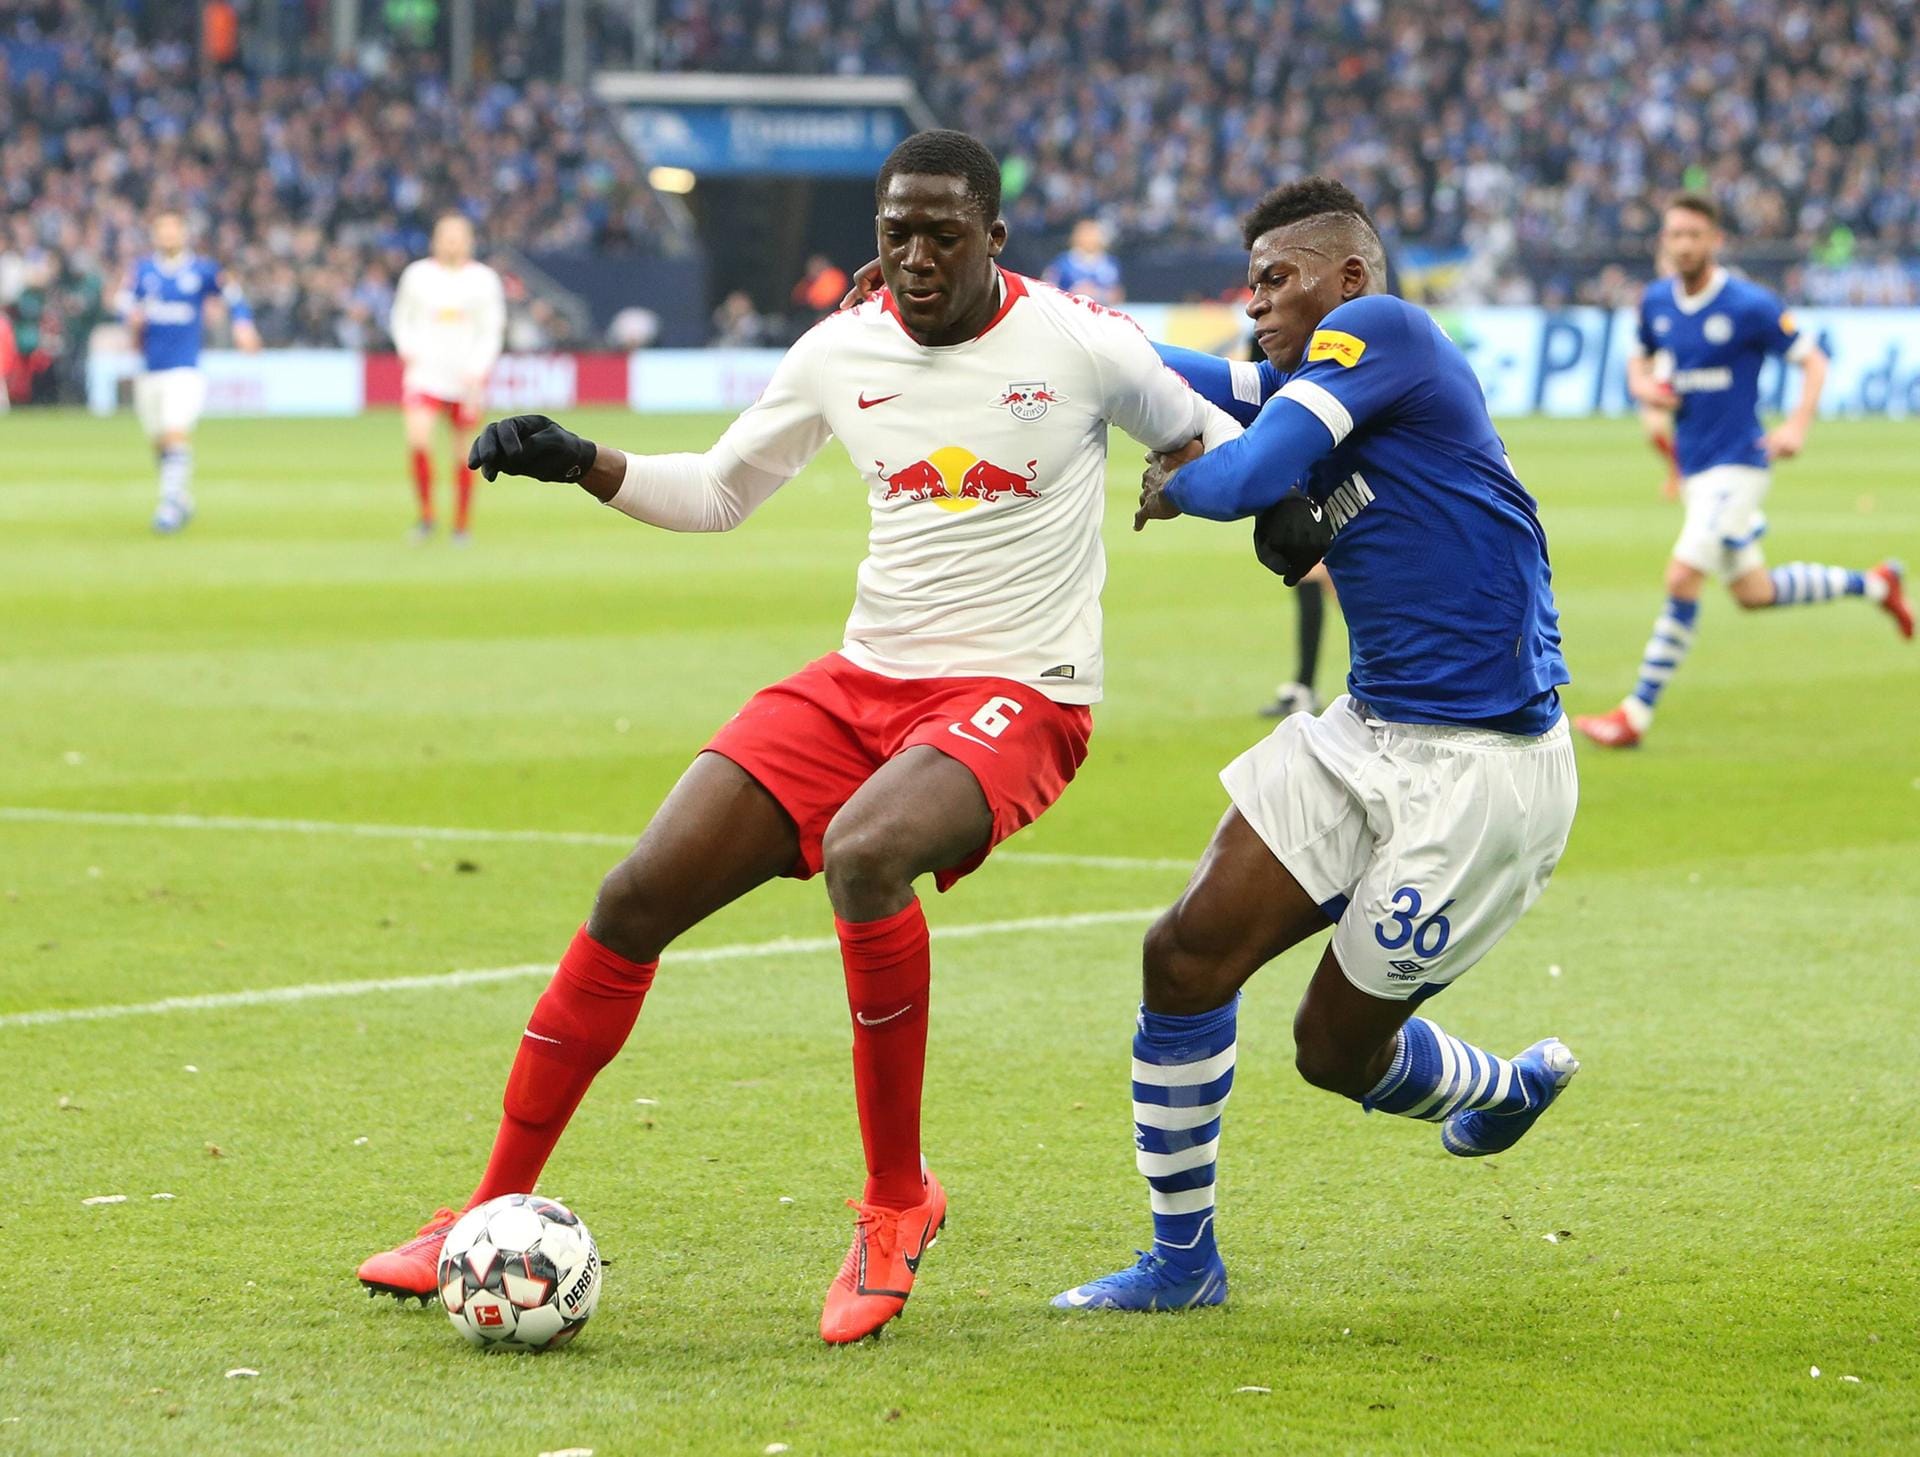 Ibrahima Konaté: Die Abwehr war zuweilen die Achillesferse von RB Leipzig. Aber das lag in den seltensten Fällen an Konaté. Für einen 19-Jährigen zeigte er eine ungemeine Konstanz in seinen Verteidigungsaktionen und auch im Spielaufbau.